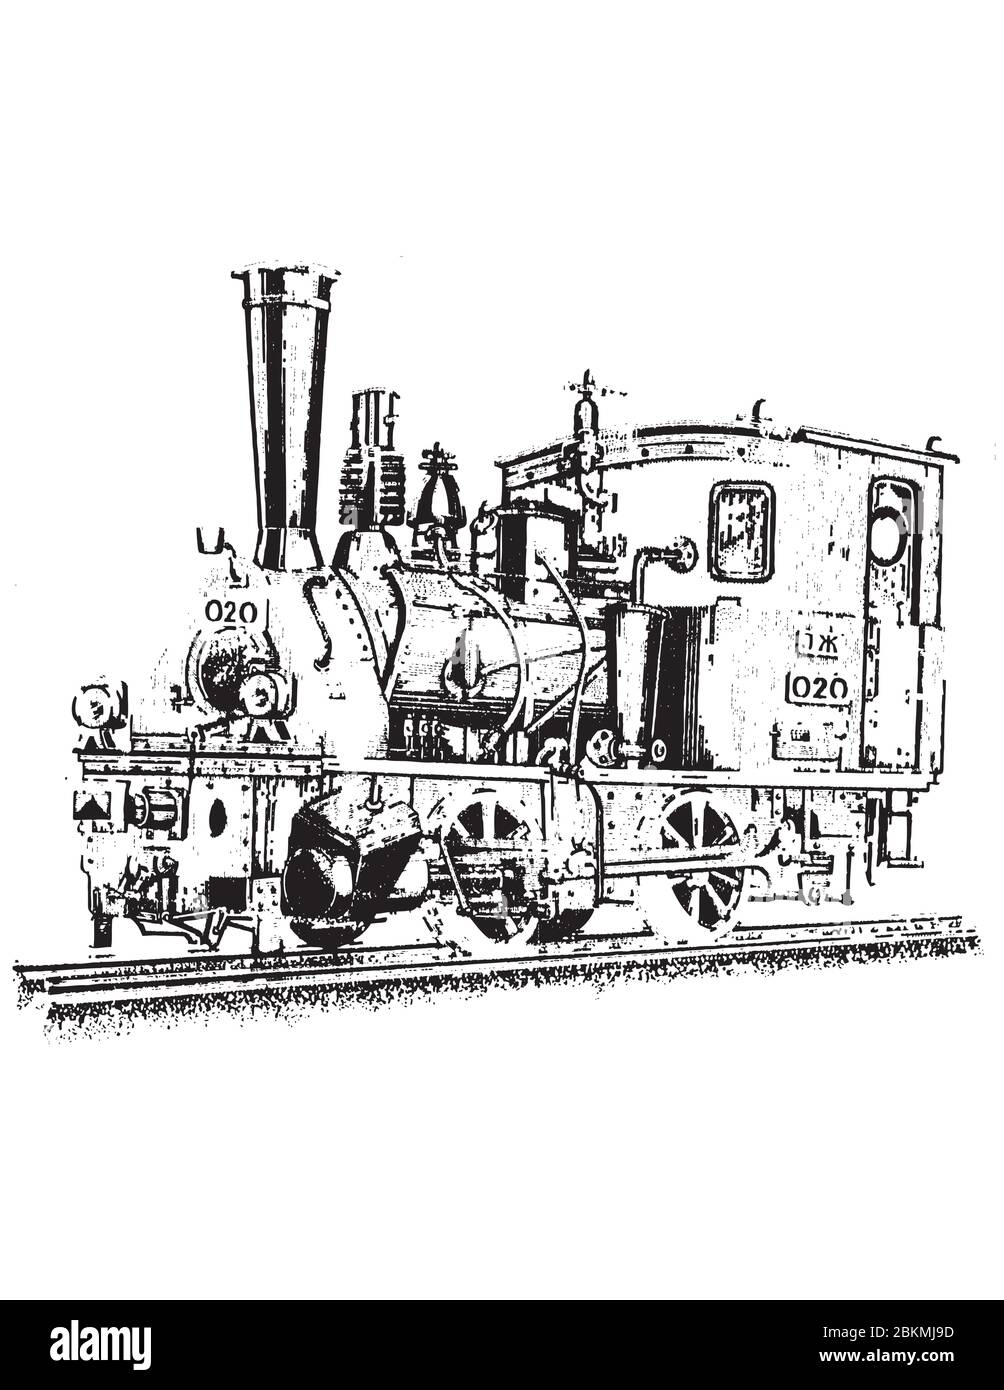 La locomotive rétro à vapeur sur les rails de chemin de fer marqués 020 Illustration de Vecteur